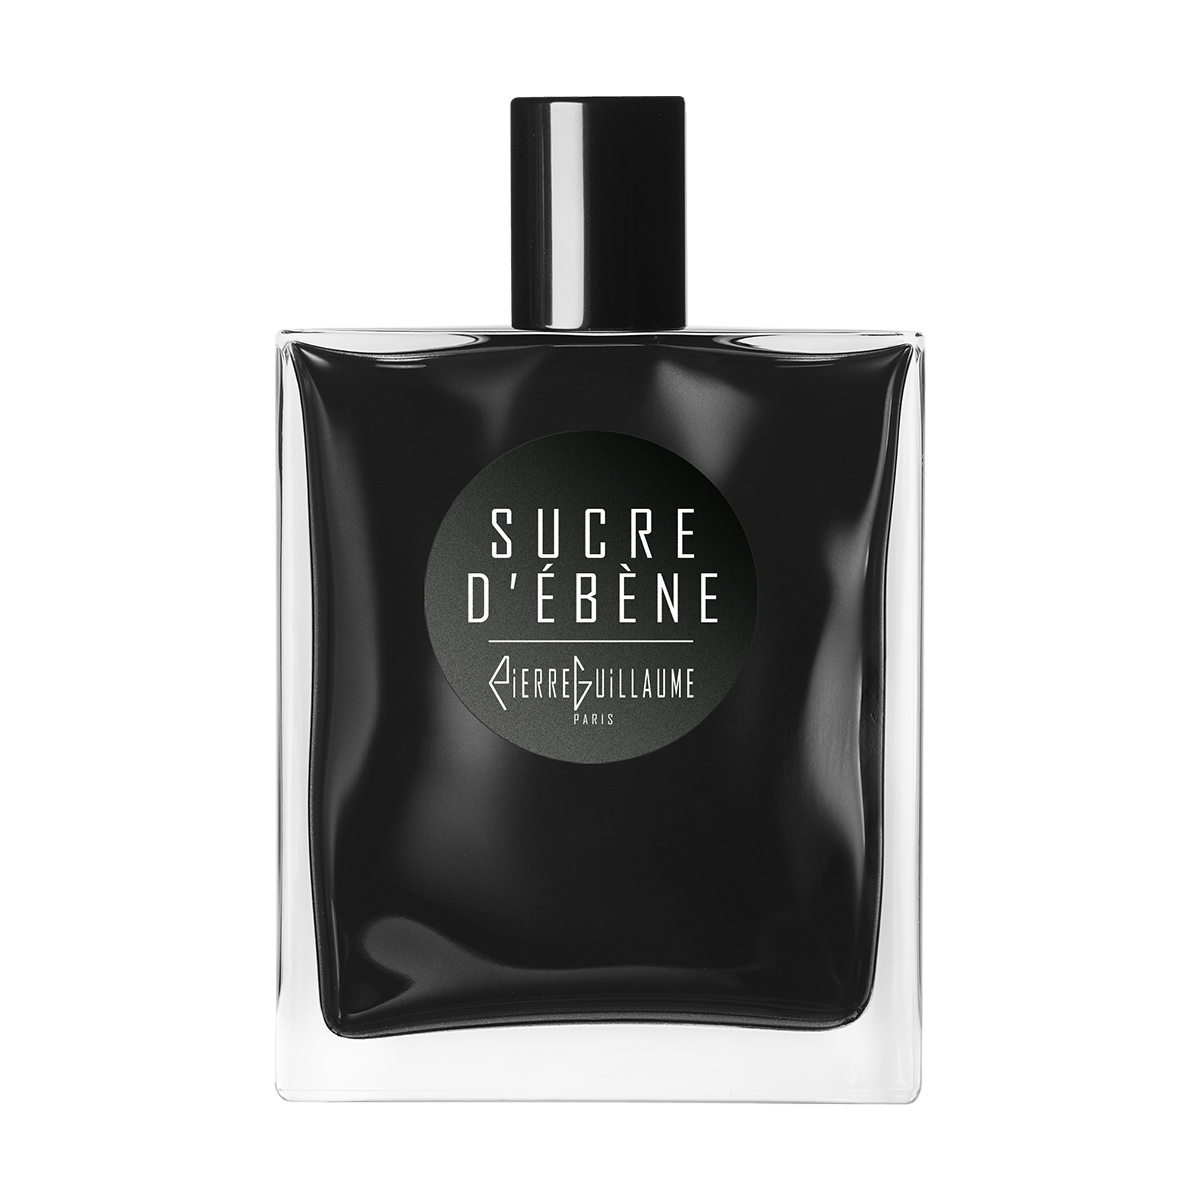 Pierre Guillaume Noire - Sucre d'ebene 100 ml | Perfume Lounge